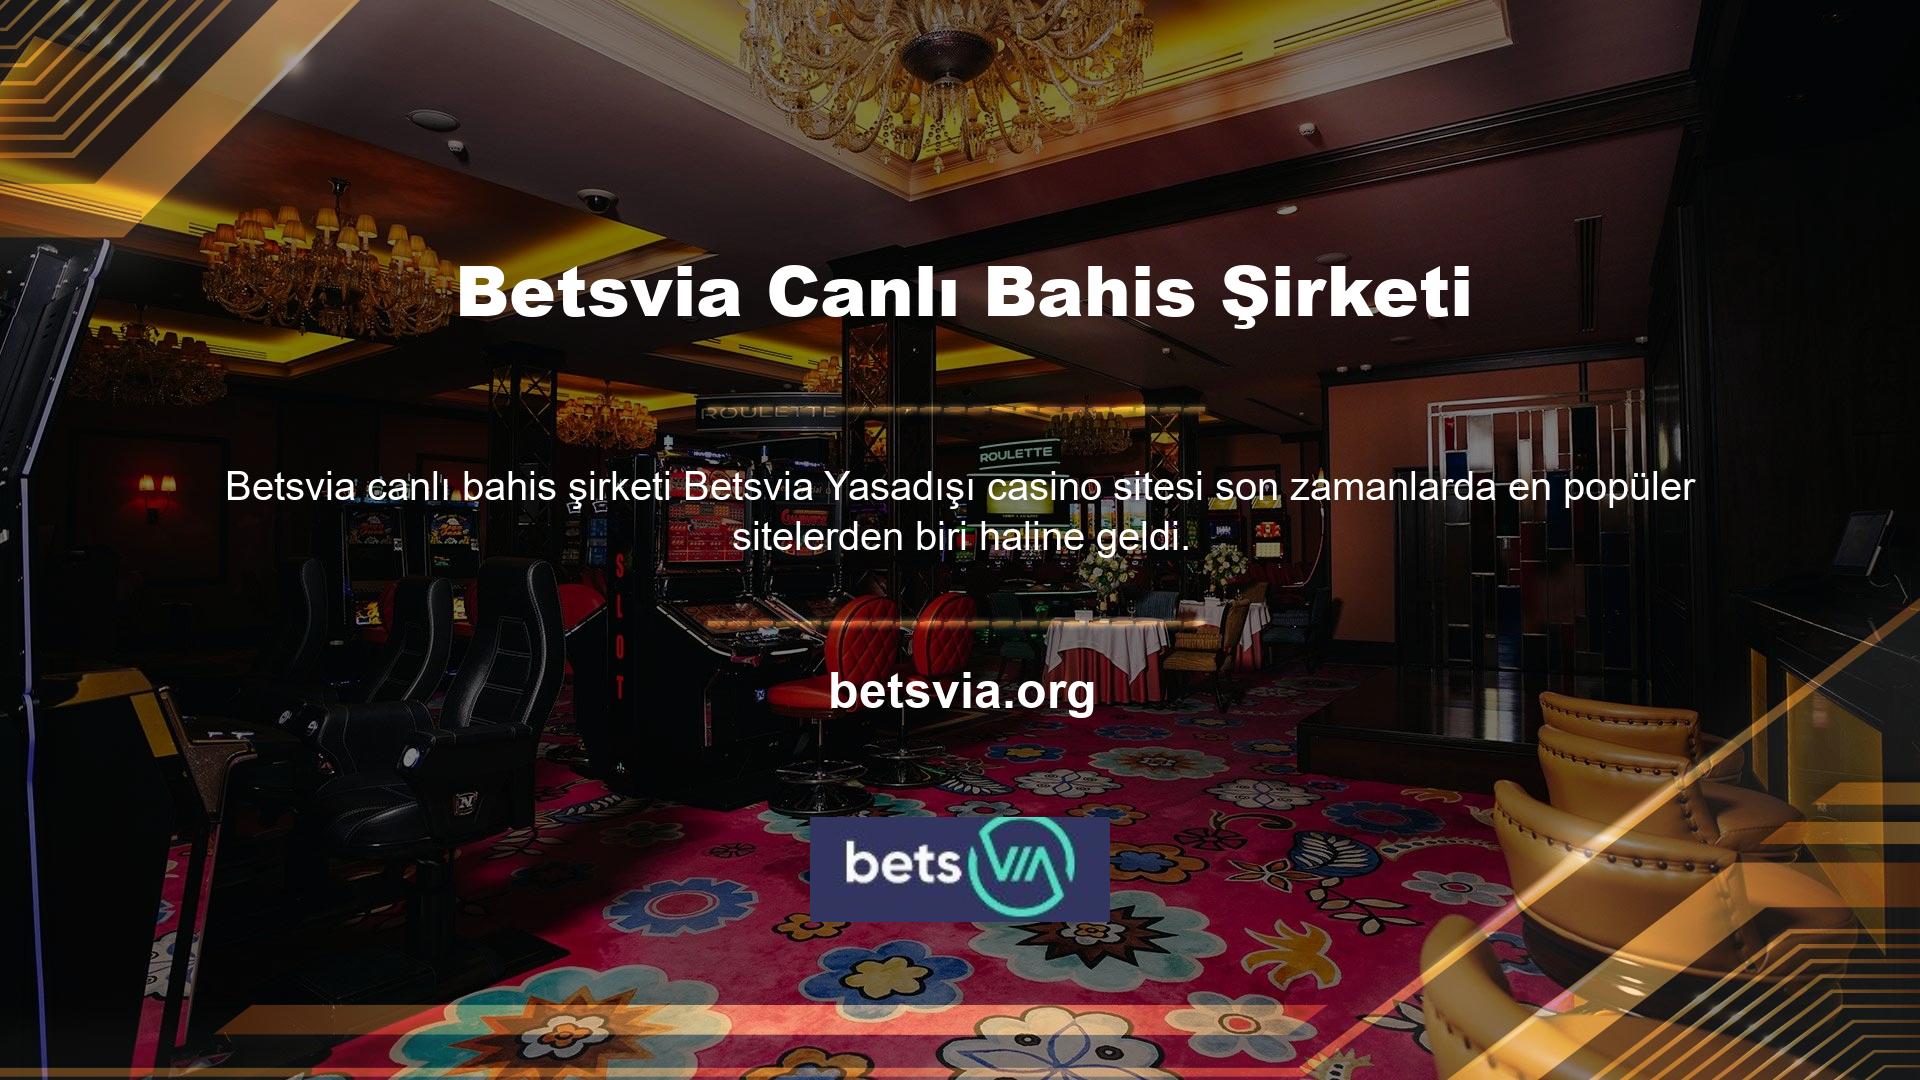 Betsvia canlı bahis ve casino oyun sitesi, kullanıcı sorunlarını ortaya çıktıkları anda çözmek için 7/24 canlı destek hattı sunmaktadır